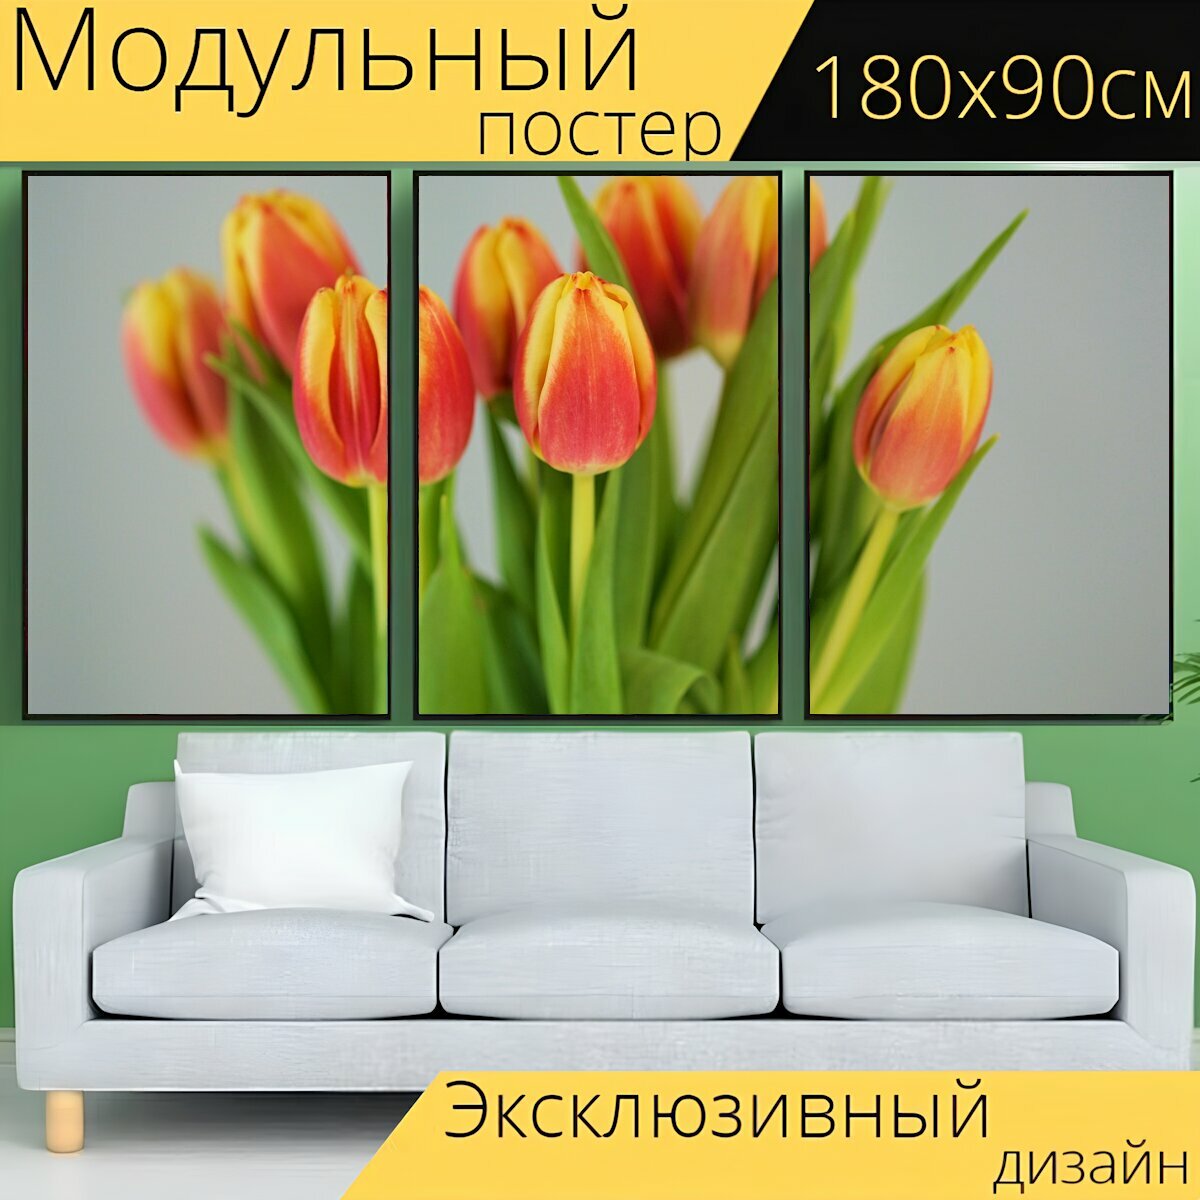 Модульный постер "Цветы, тюльпаны, бутоны" 180 x 90 см. для интерьера